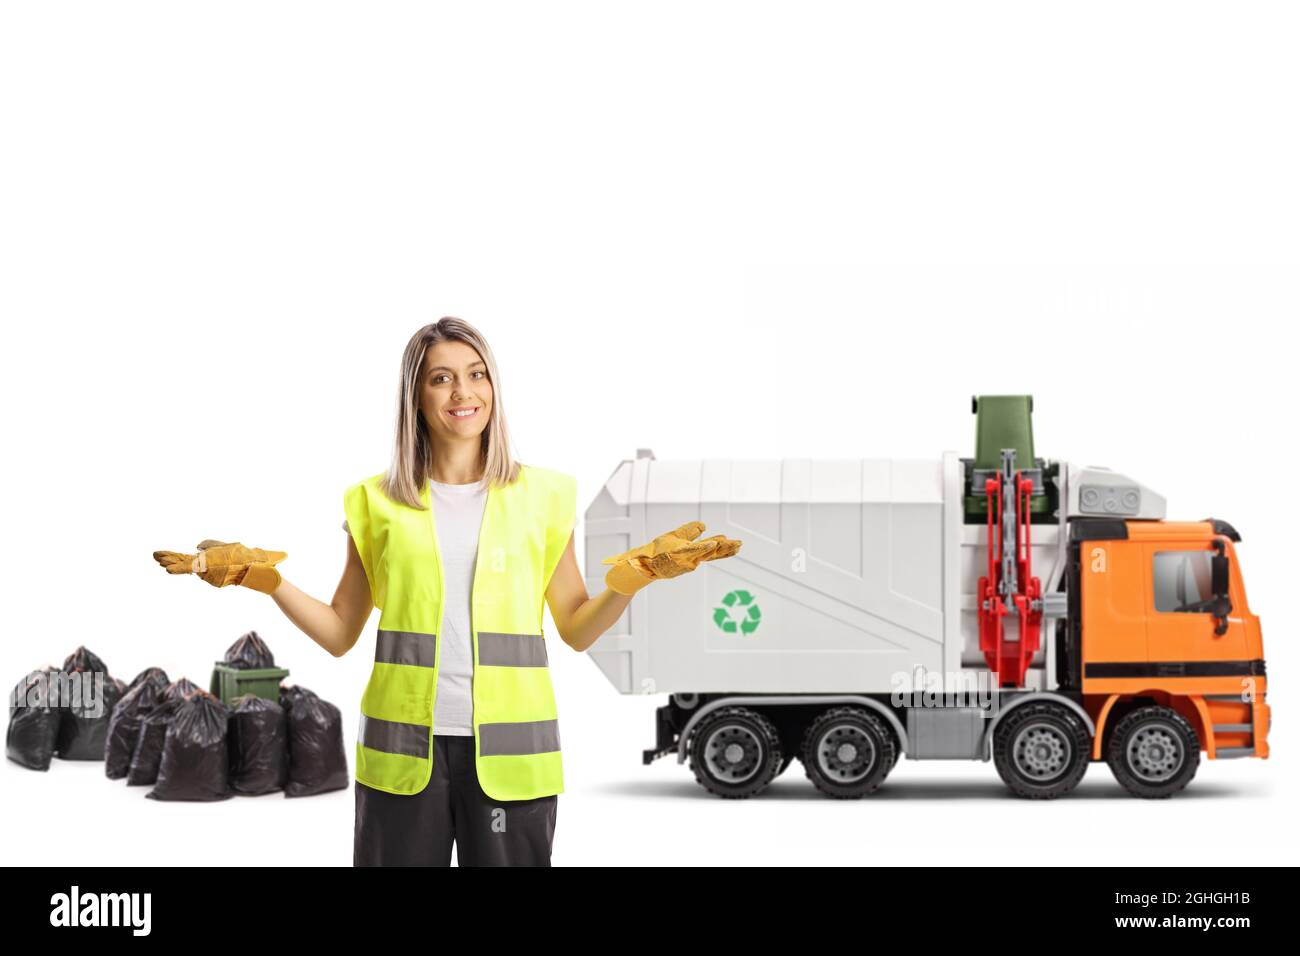 Raccolta di rifiuti femminile e un veicolo per la raccolta di rifiuti nella parte posteriore isolato su sfondo bianco Foto Stock